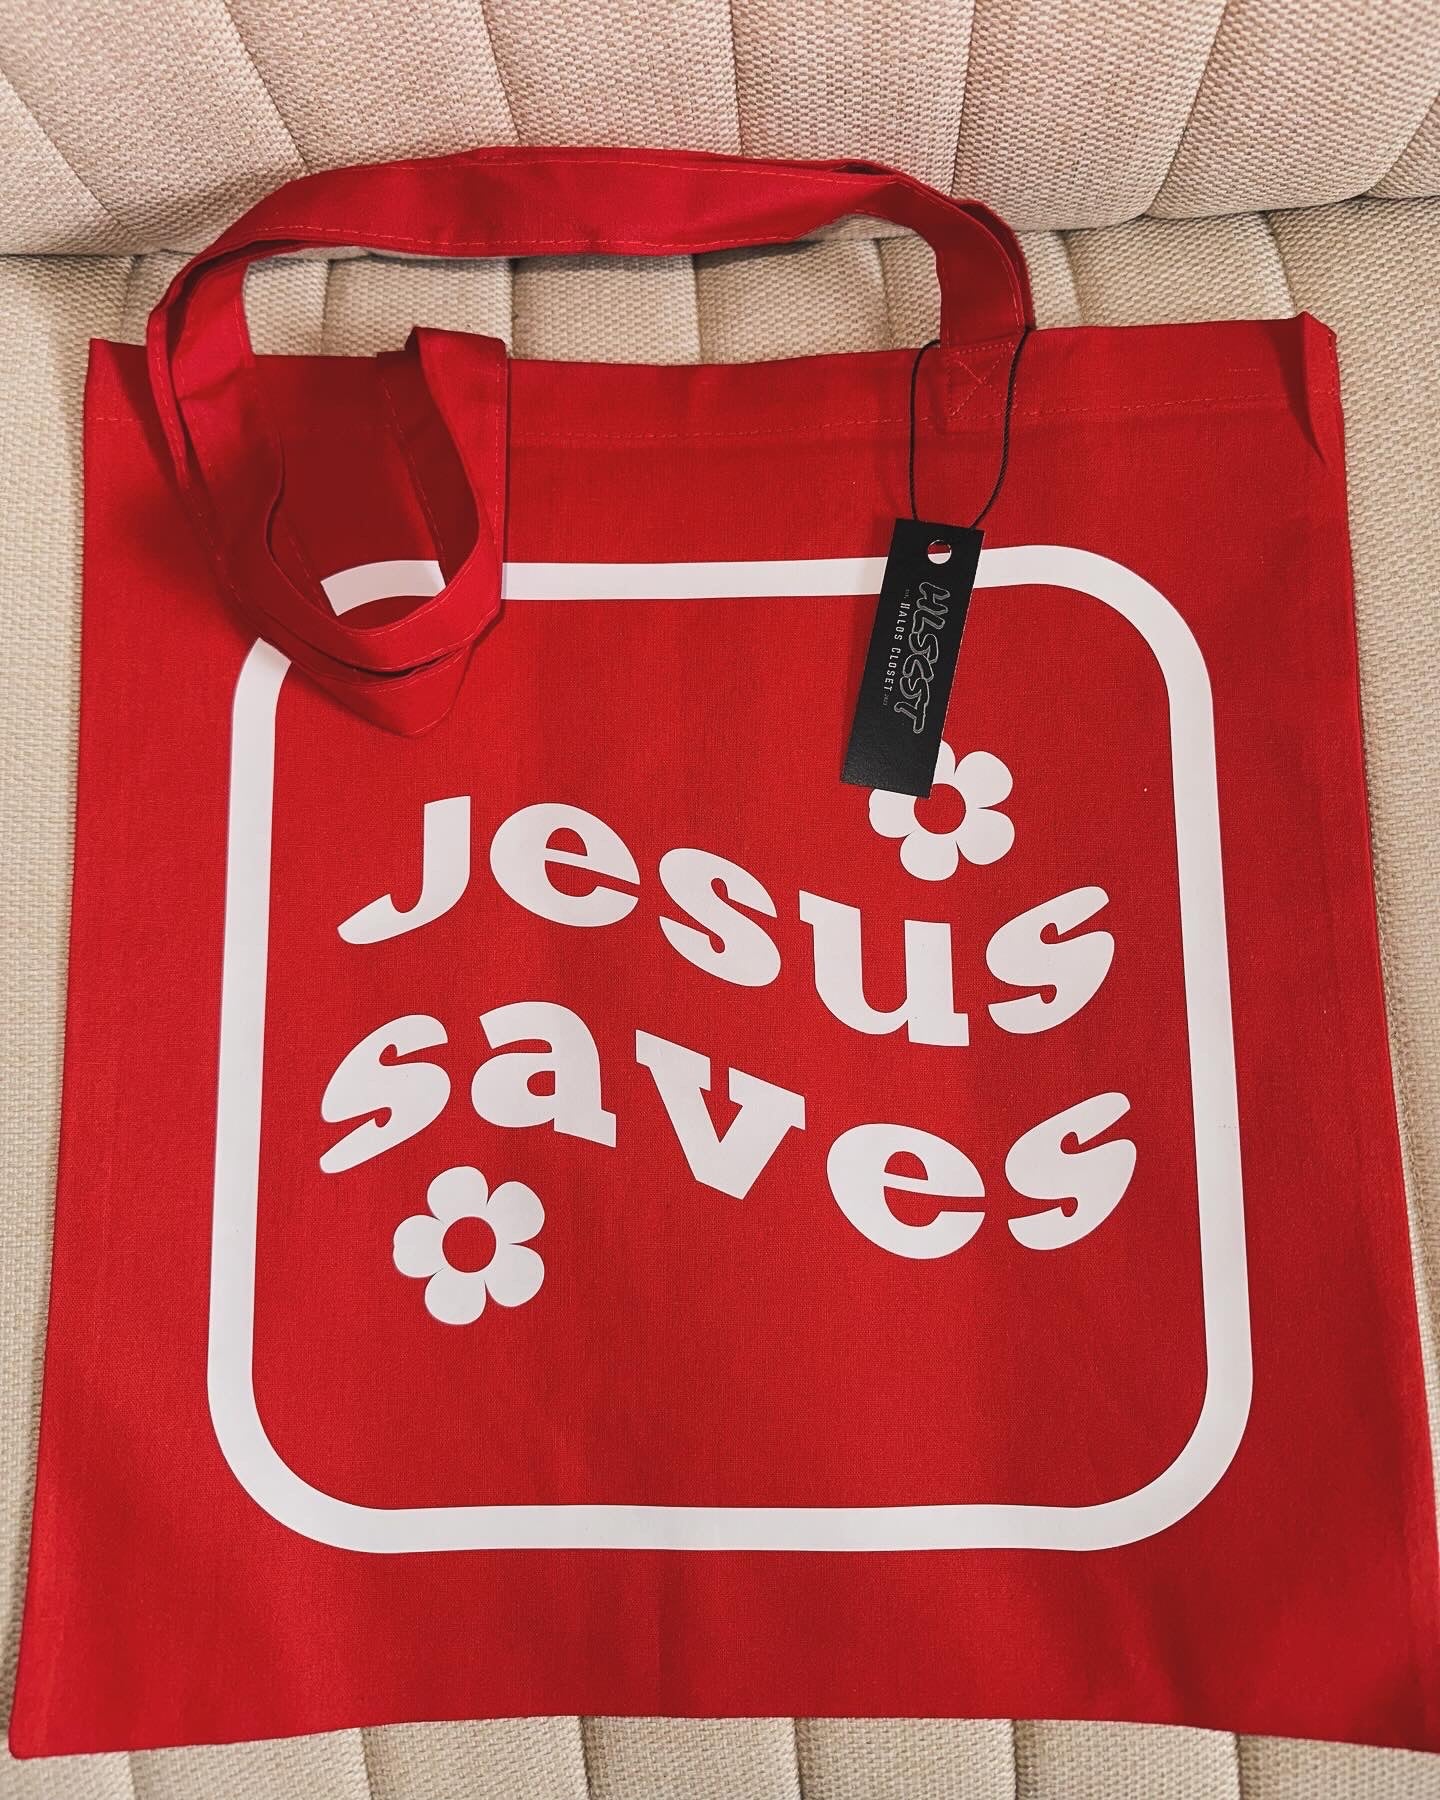 Jesus Saves - Tote